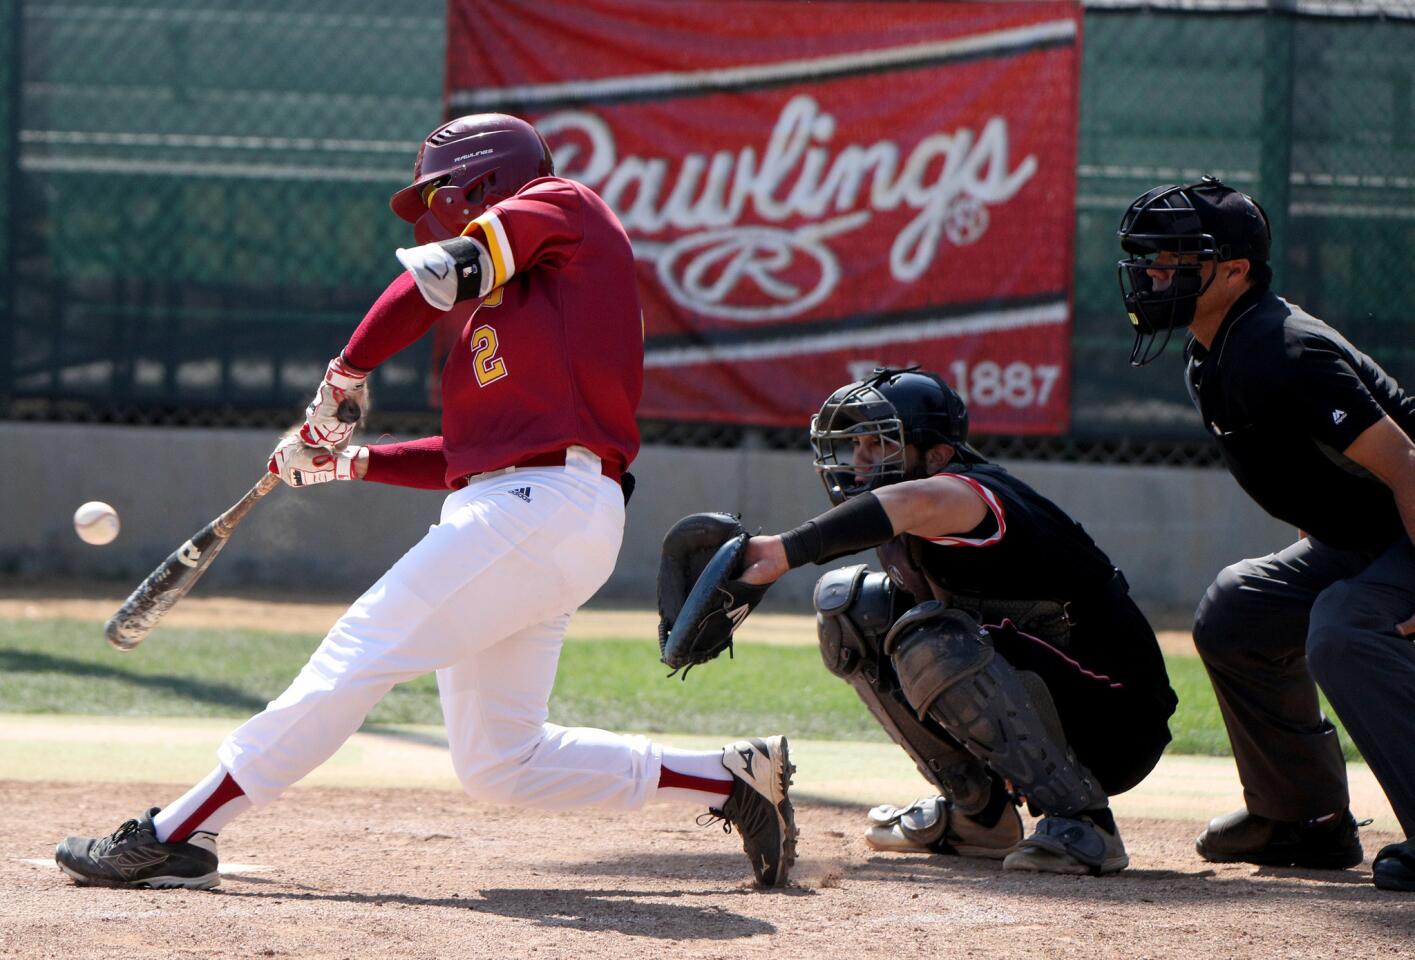 Photo Gallery: Glendale College baseball vs. Santa Barbara in regional championships